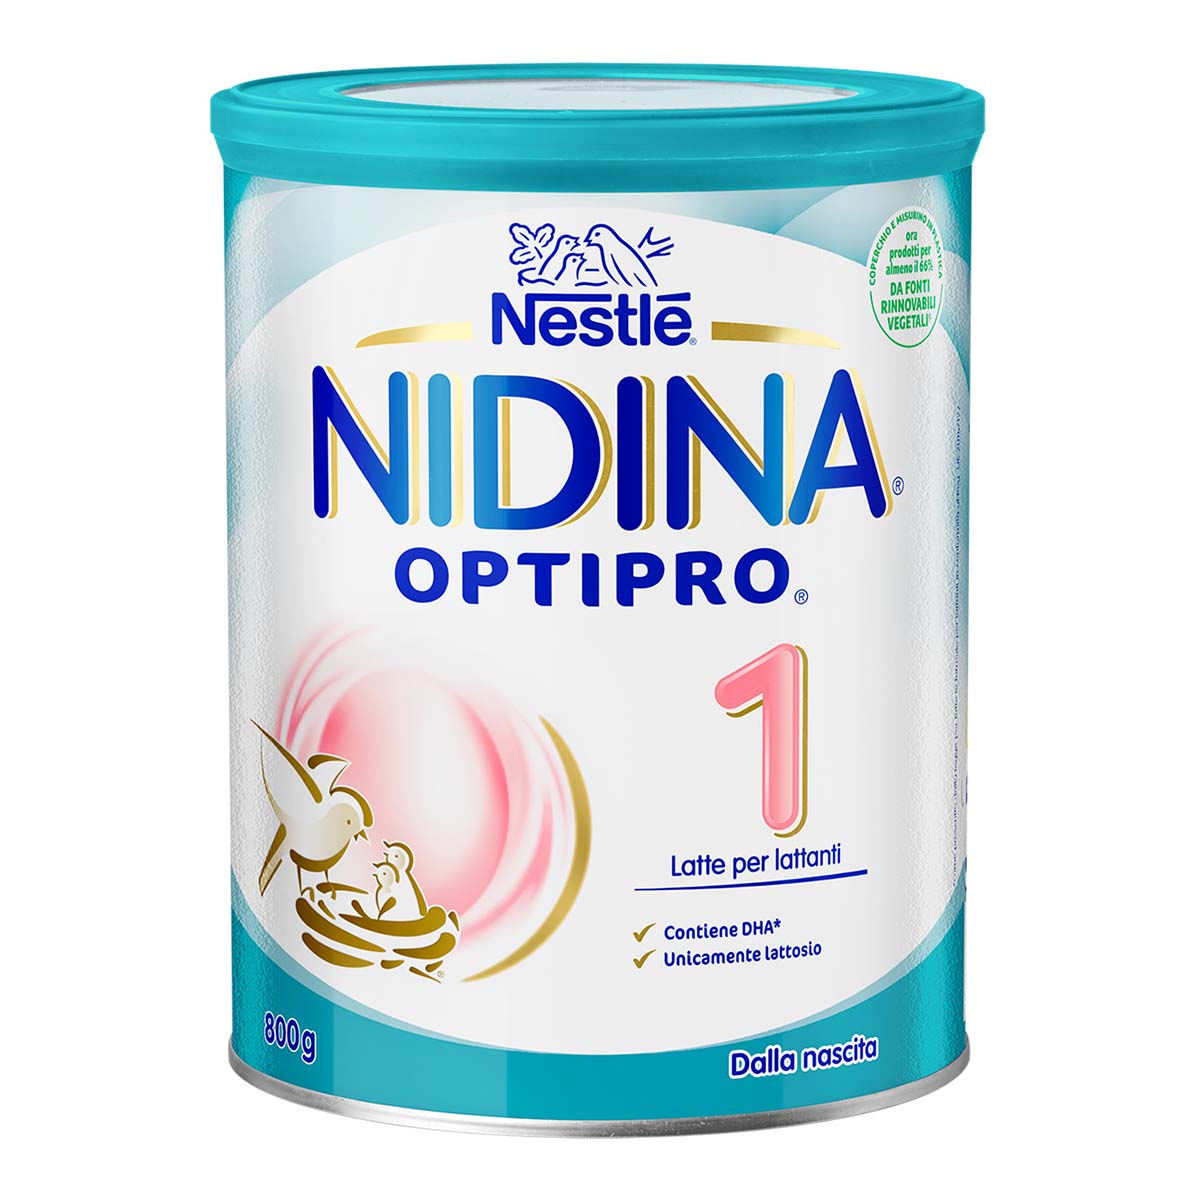 Nestlé NIDINA OPTIPRO 1 800g, Latte per lattanti in polvere, dalla nascita al 6° mese